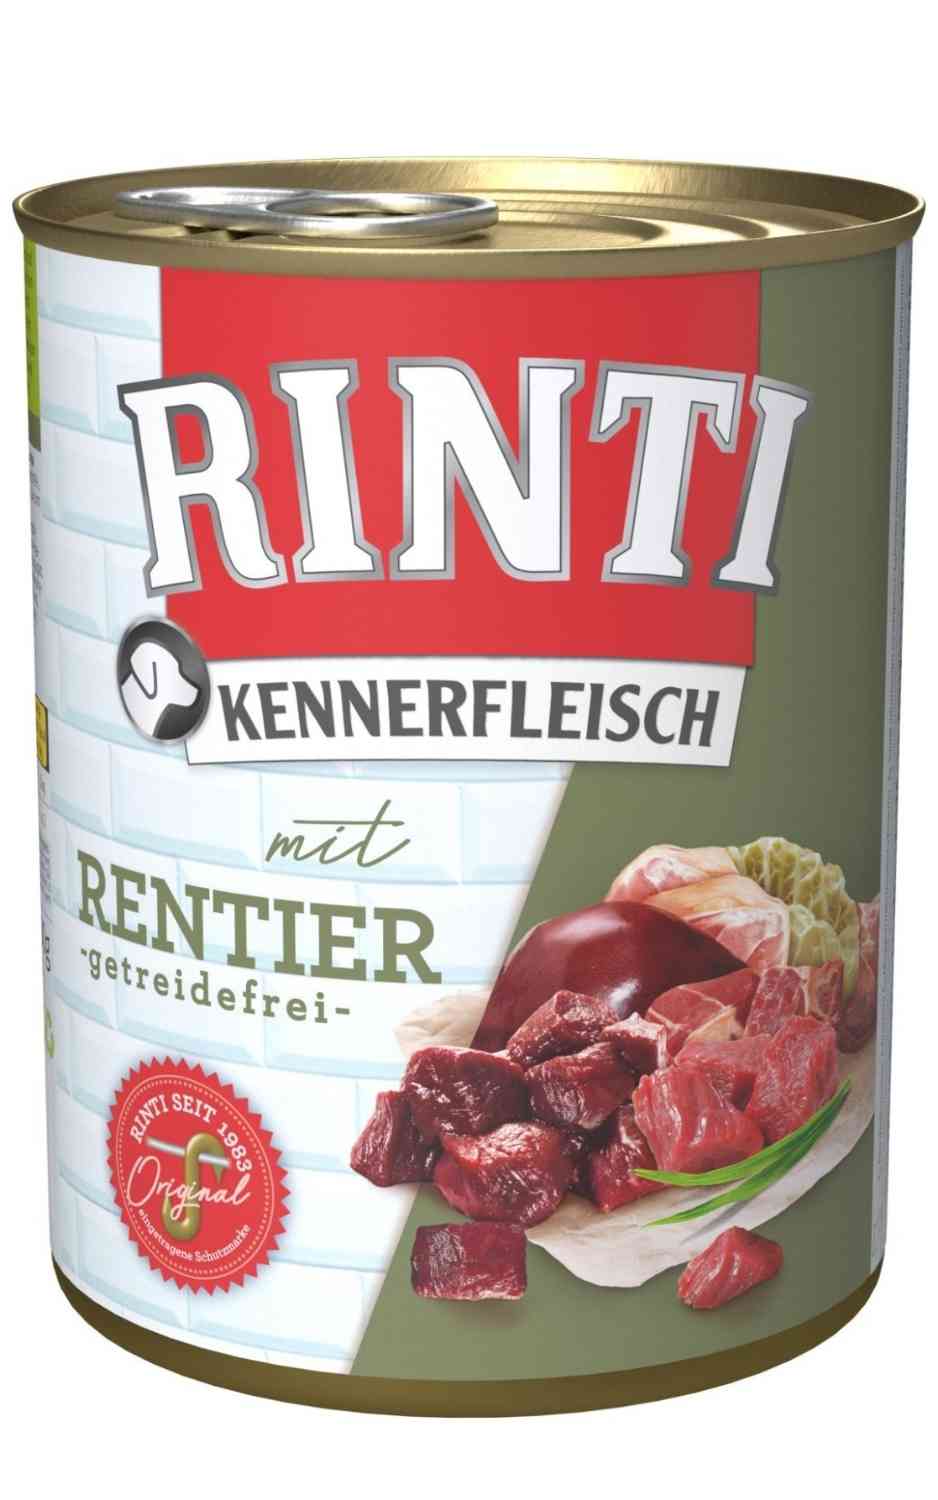 Rinti Kennerfleisch Rentier 400 g Dose